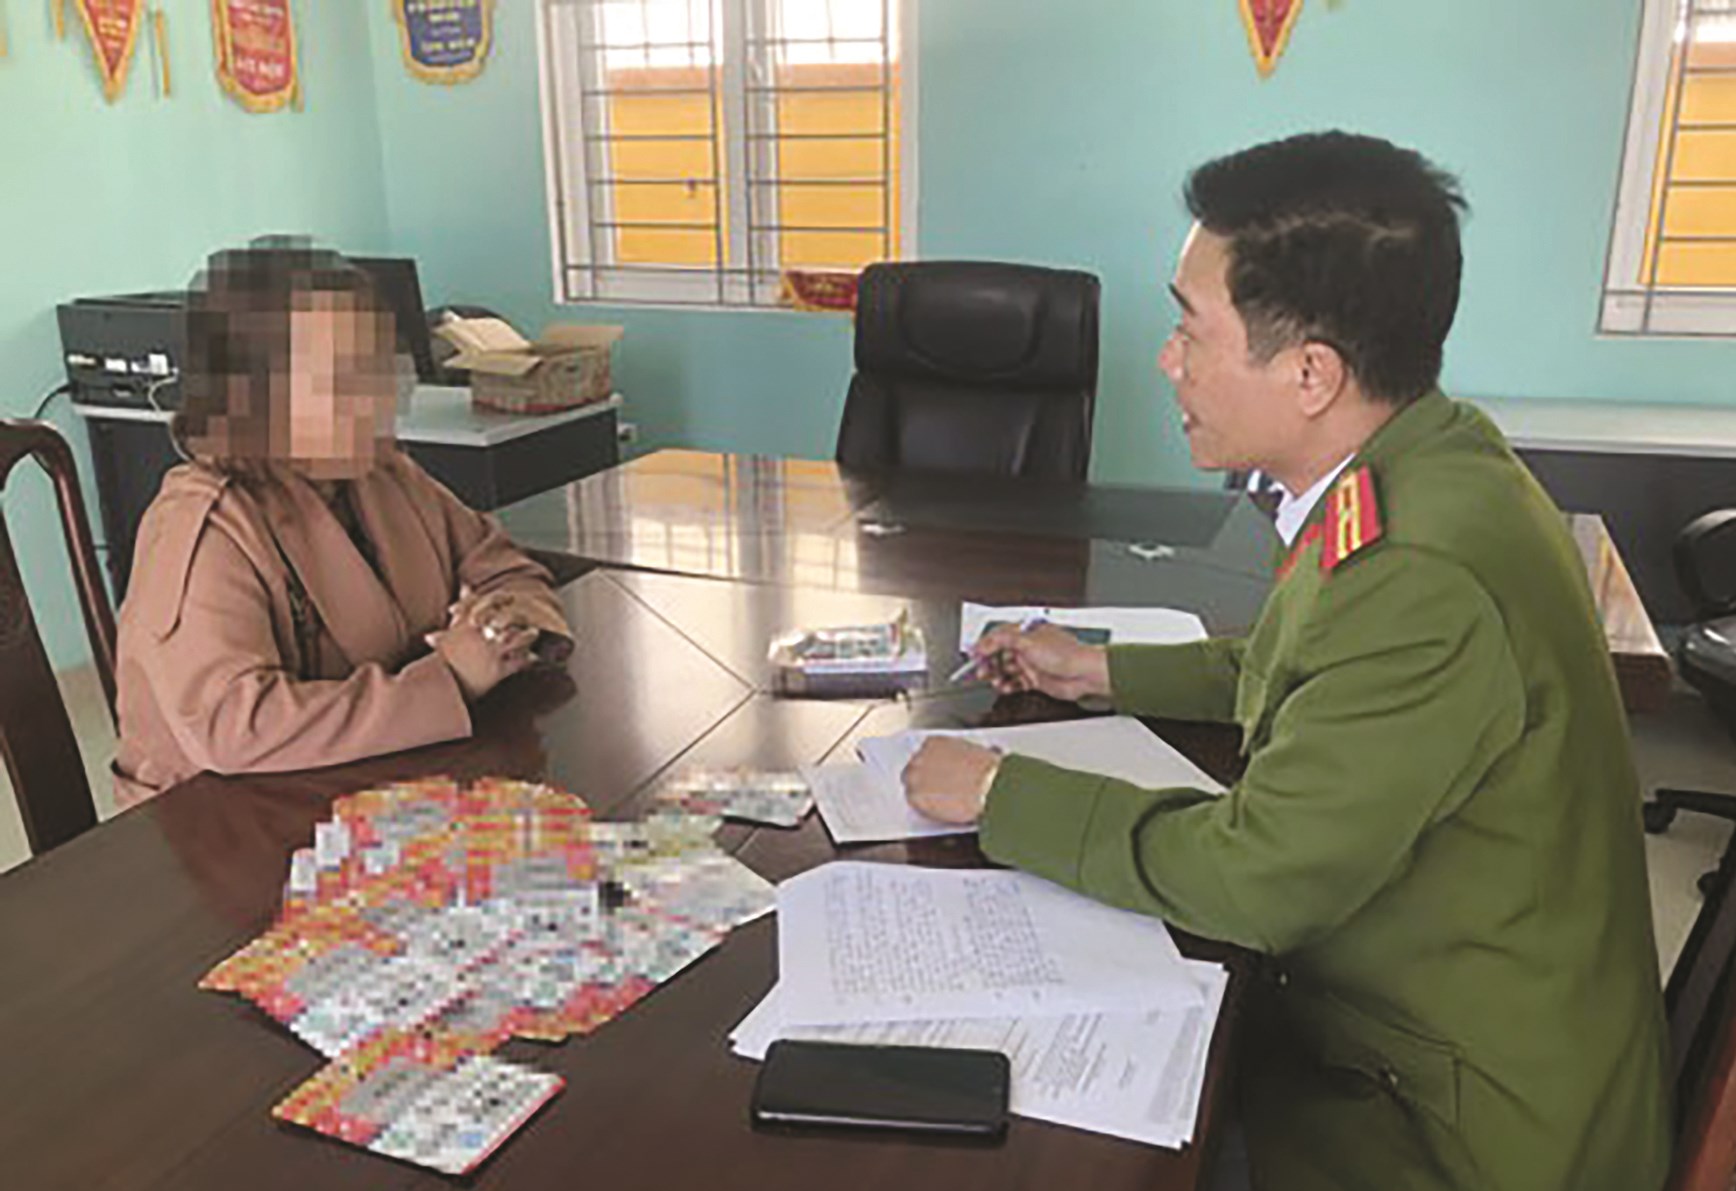 Nguyễn Thị Th. (Thừa Thiên - Huế) bị xử phạt hành chính vì bán thẻ giả chống dịch Covid-19